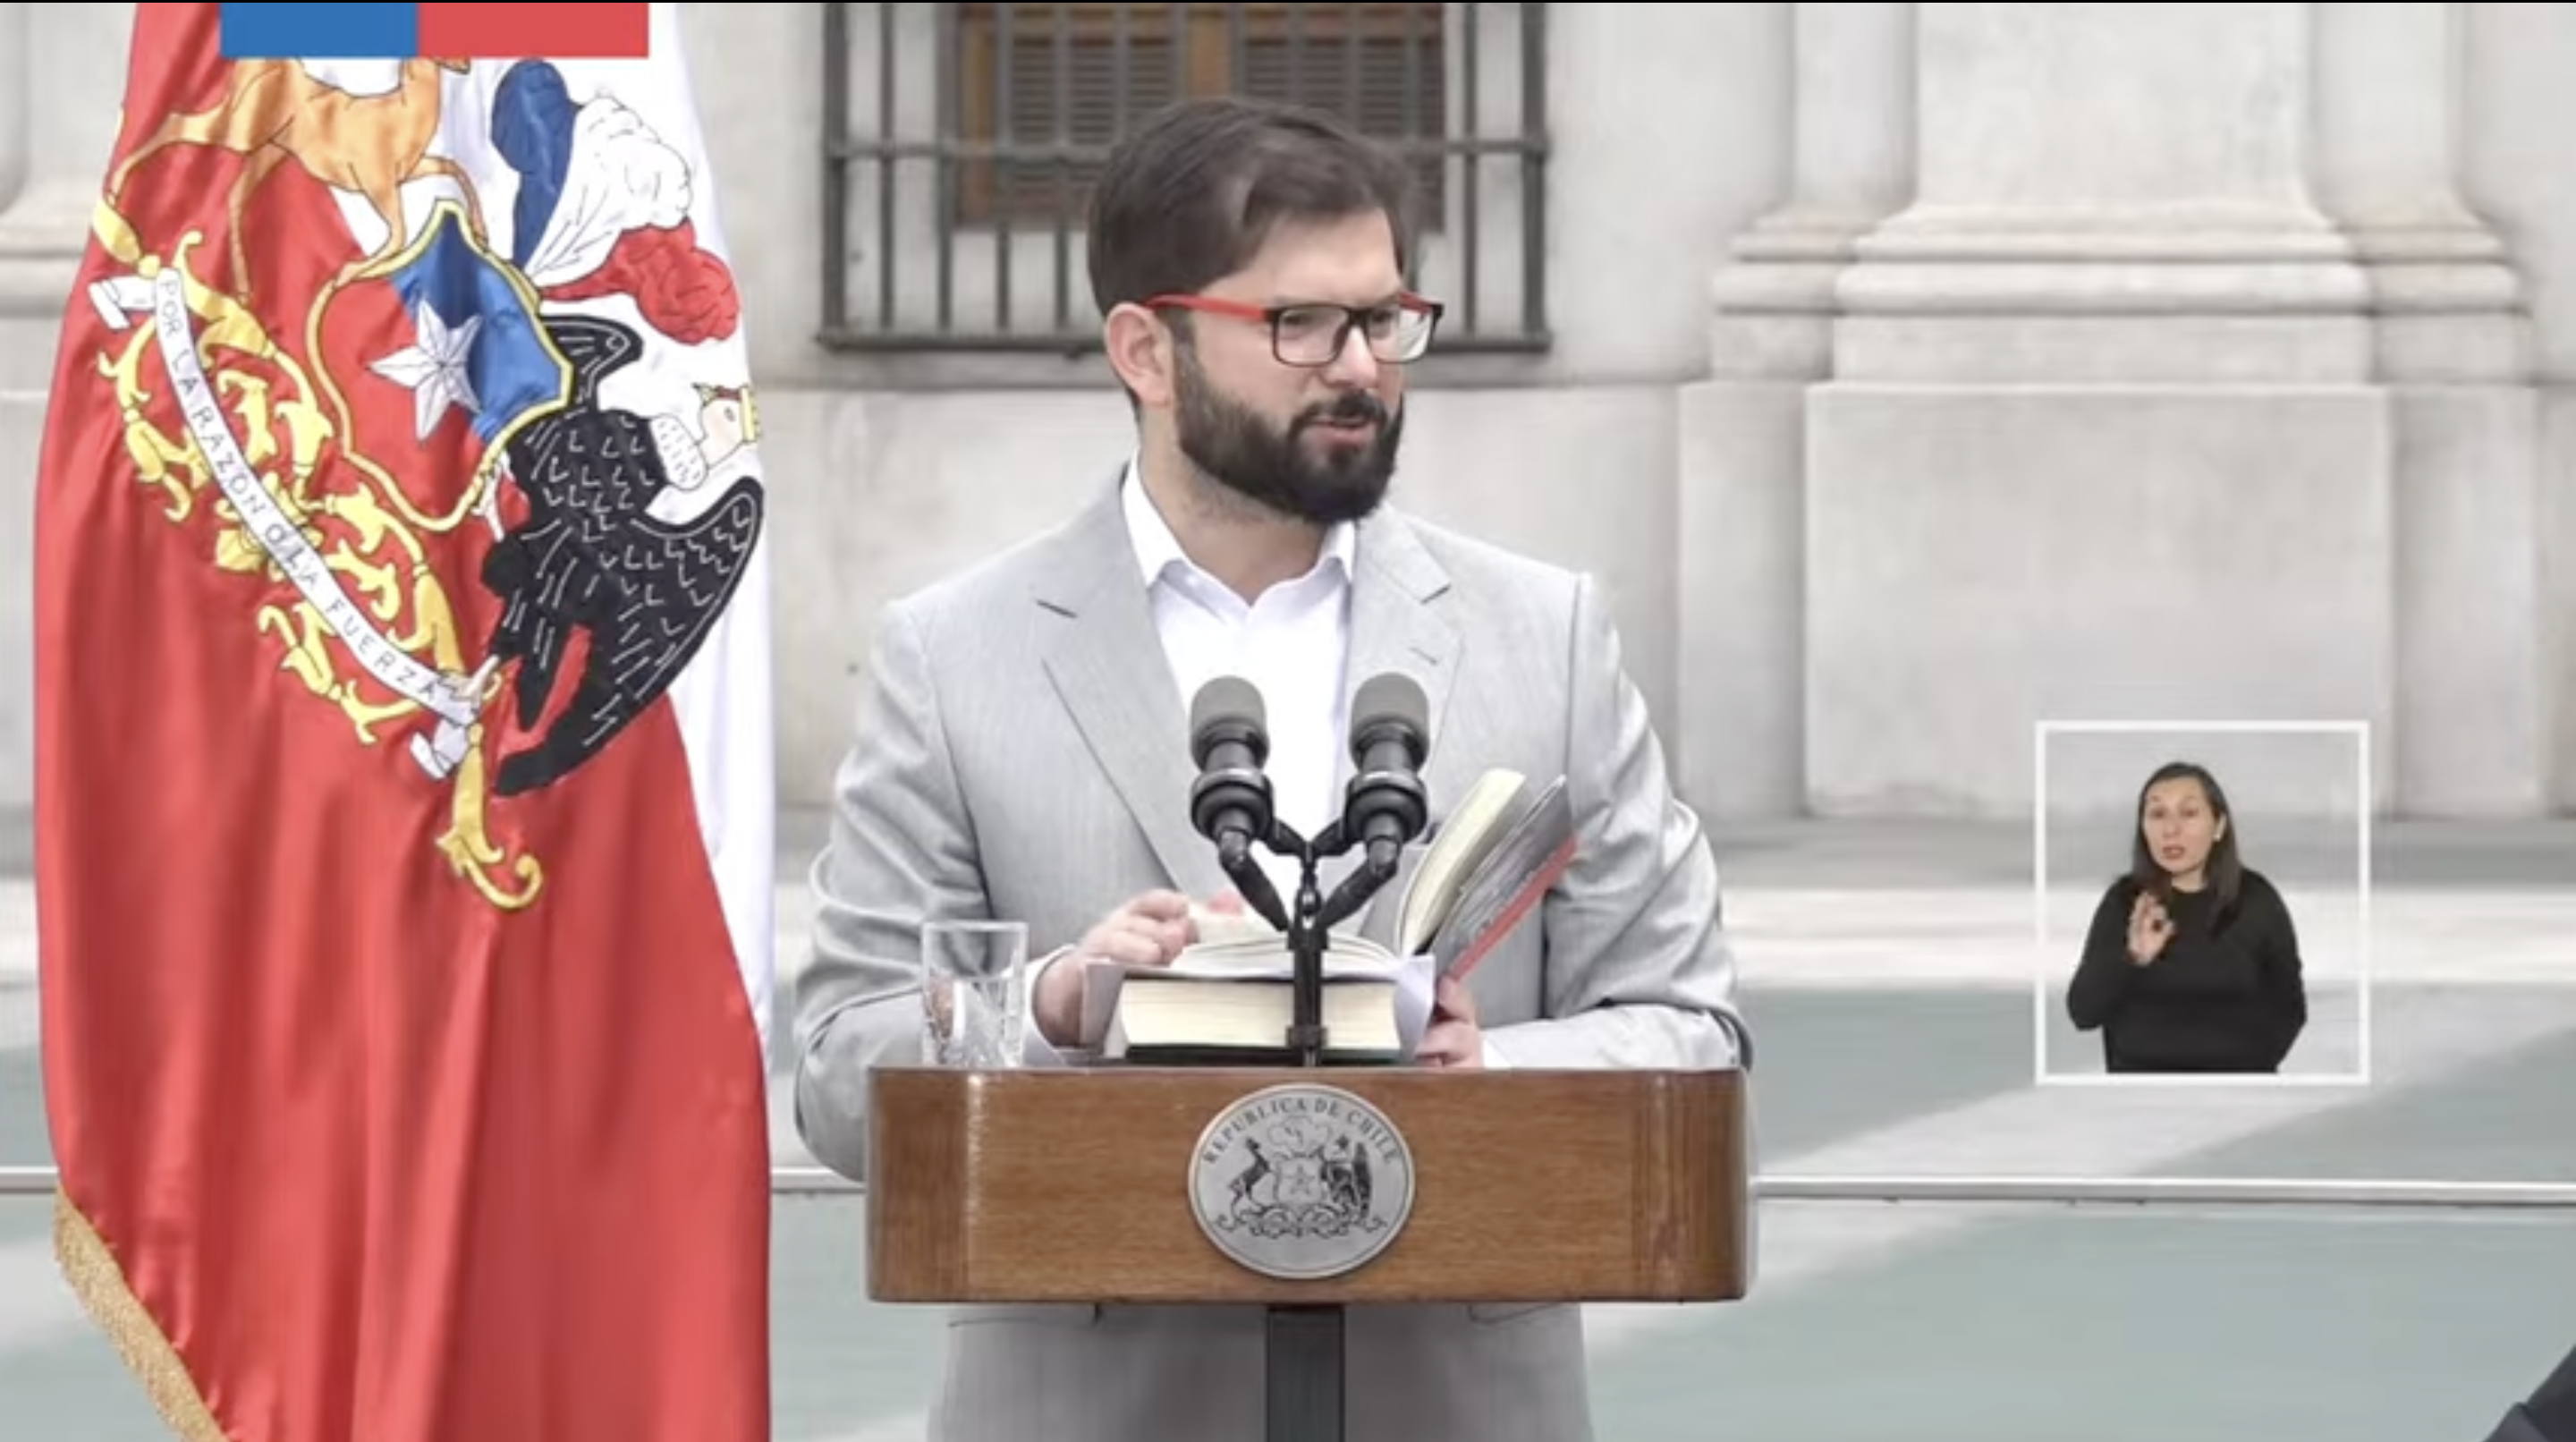 [VIDEO] Con presencia de Lagos y Piñera: Presidente Boric inaugura la estatua de Patricio Aylwin frente a La Moneda